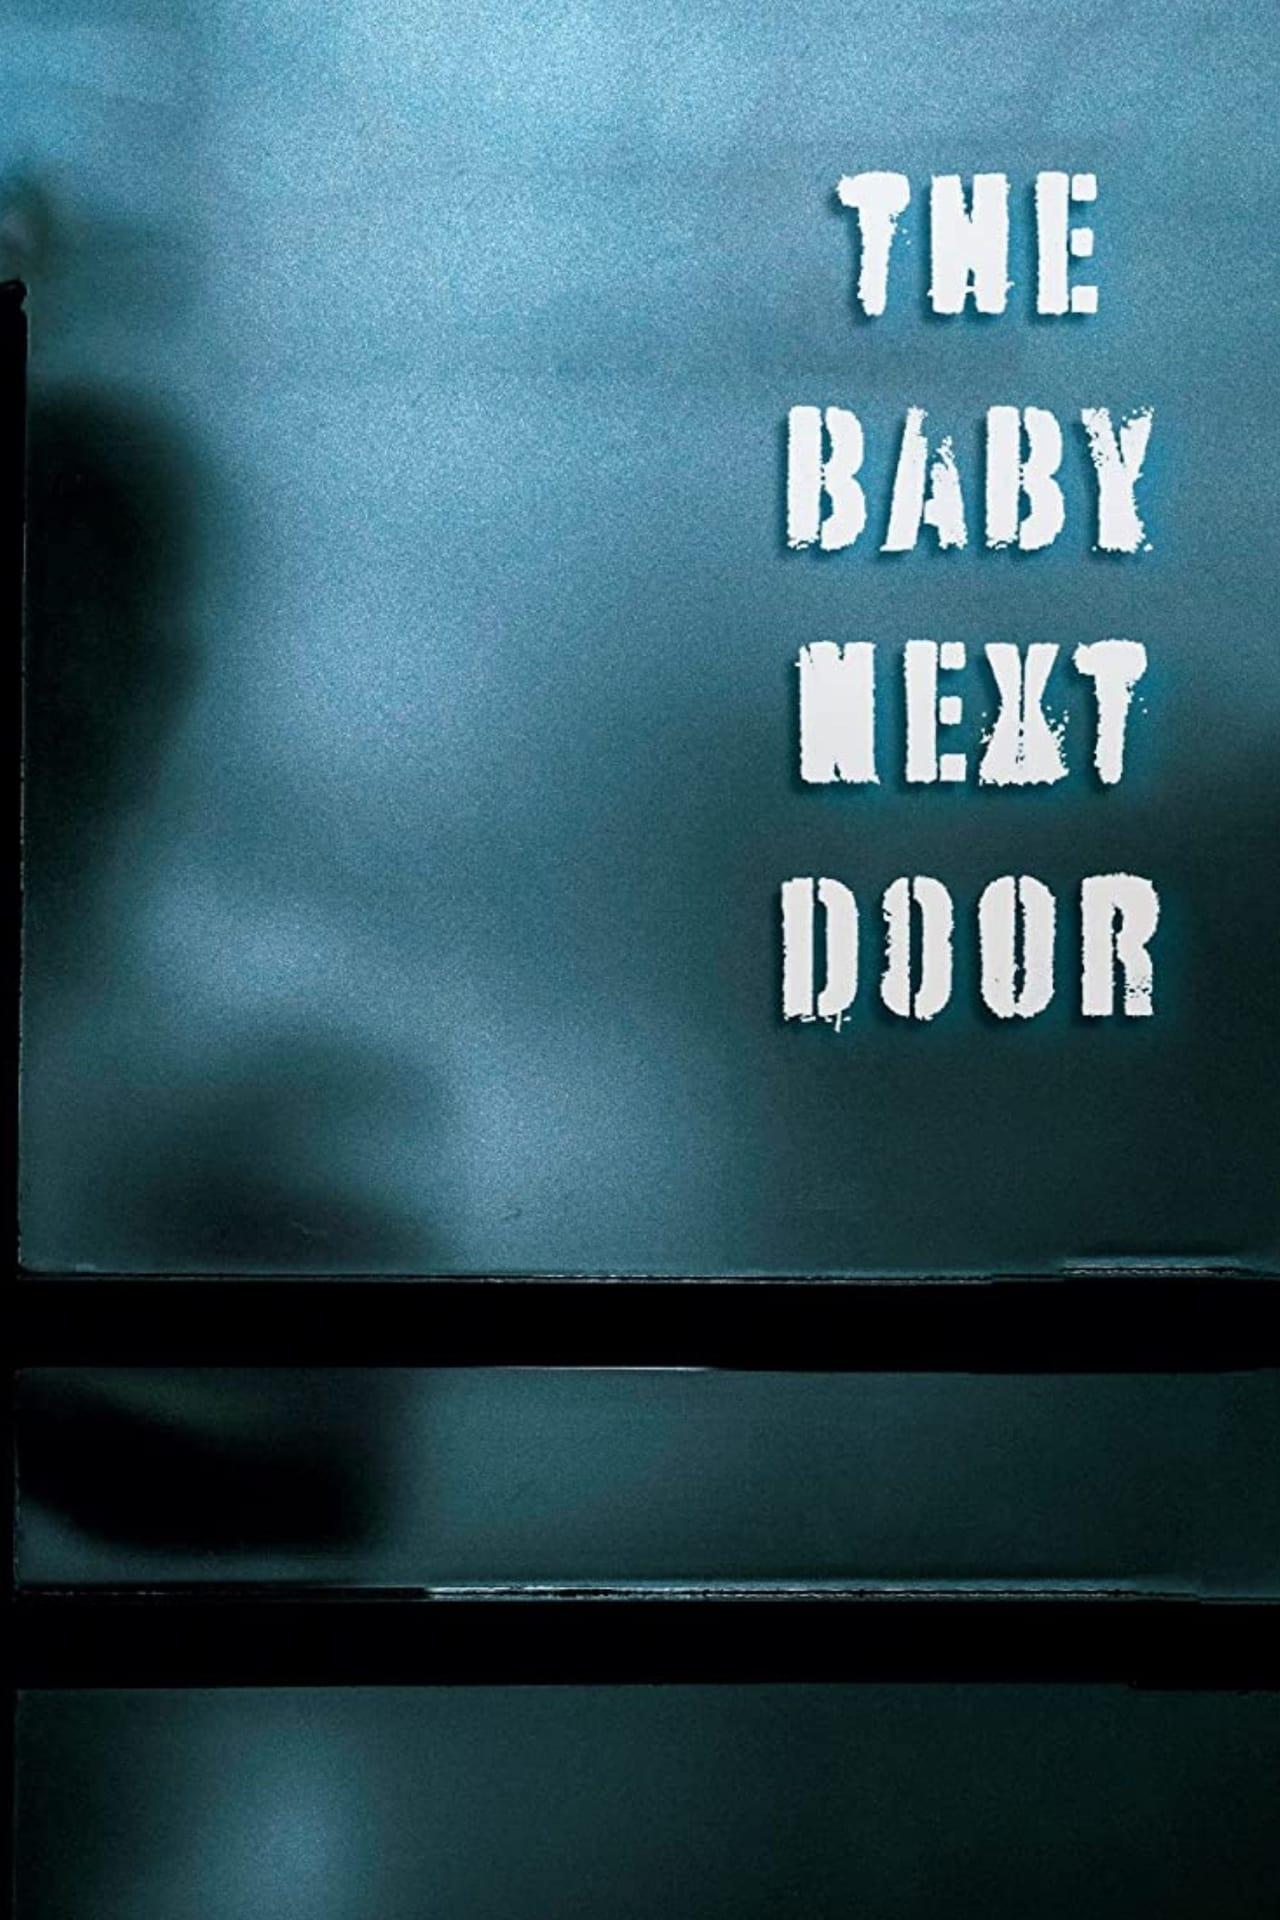 The Baby Next Door poster